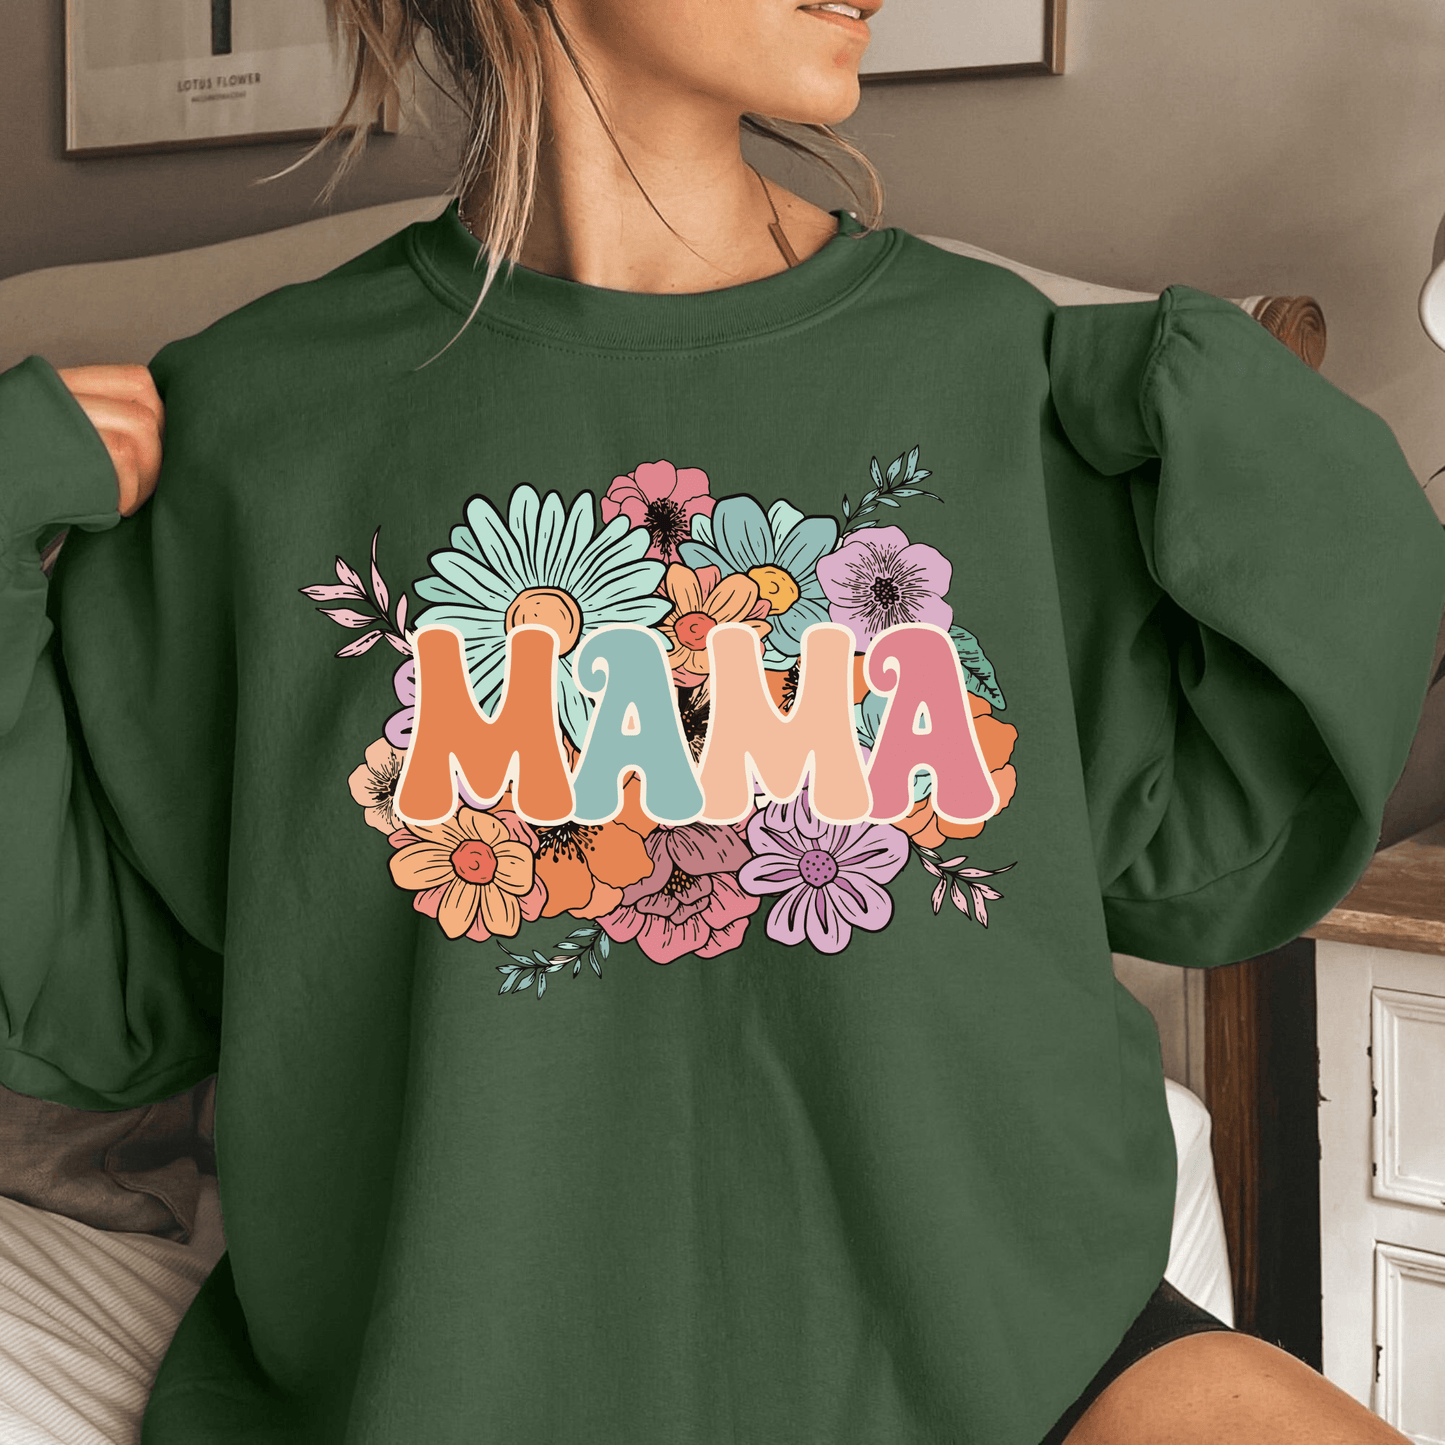 Blumenfreude Sweatshirt - Für moderne Mütter - GiftHaus